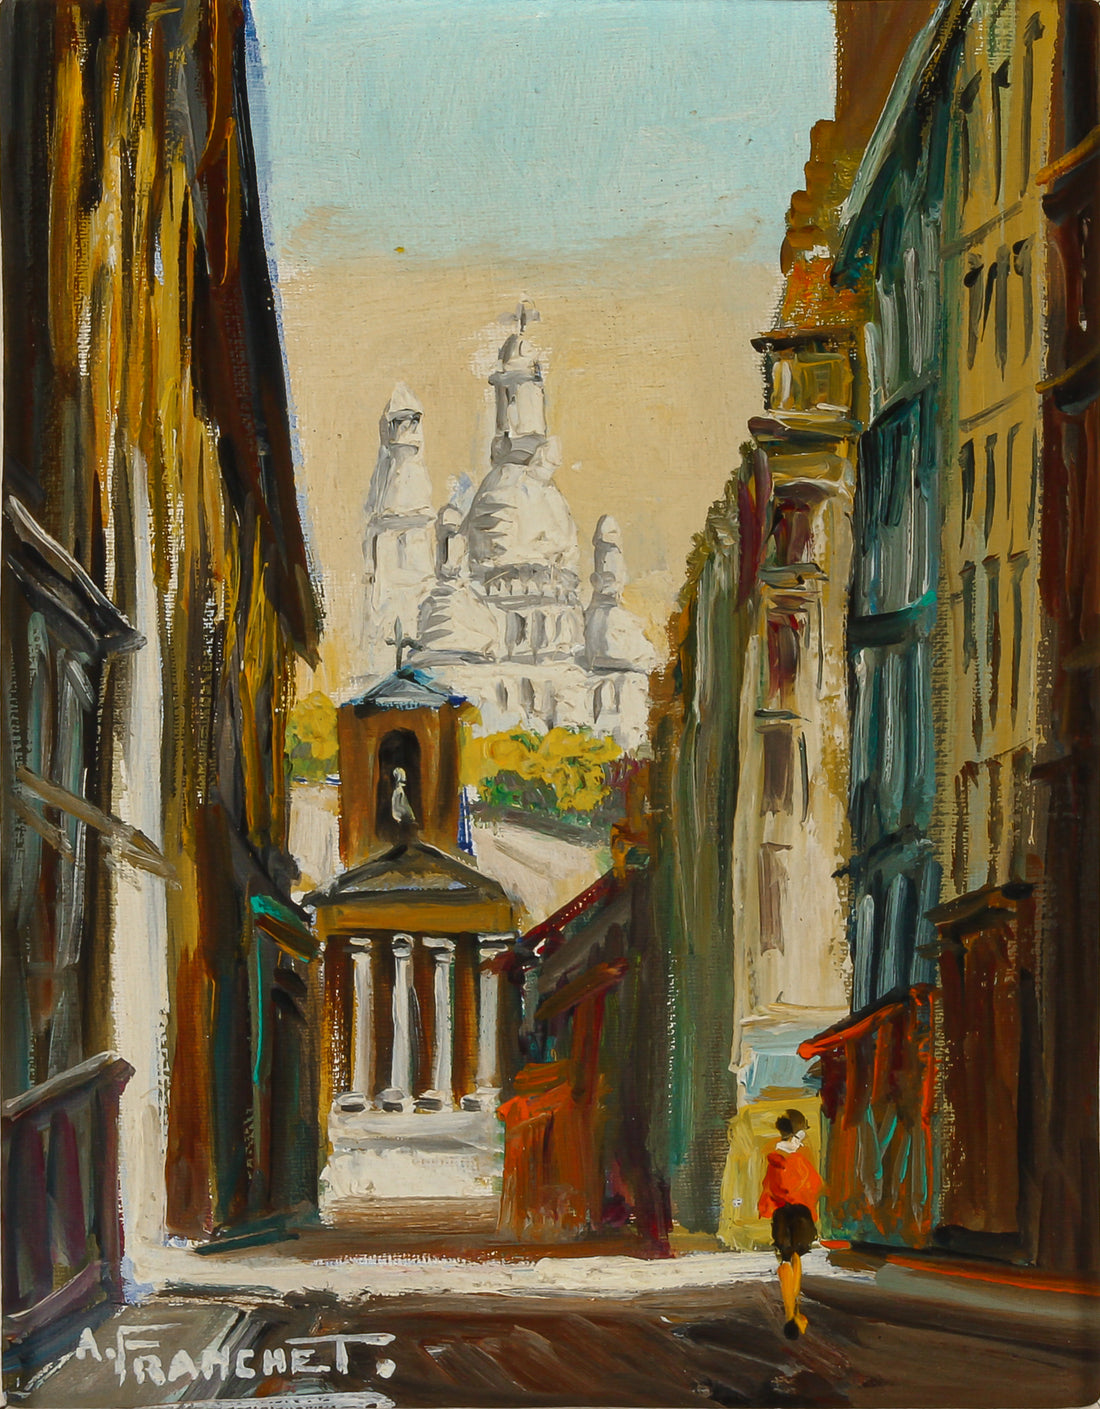 Andre Franchet - "Paris-Rue La Fyitte" (sic) - Oil on Canvas